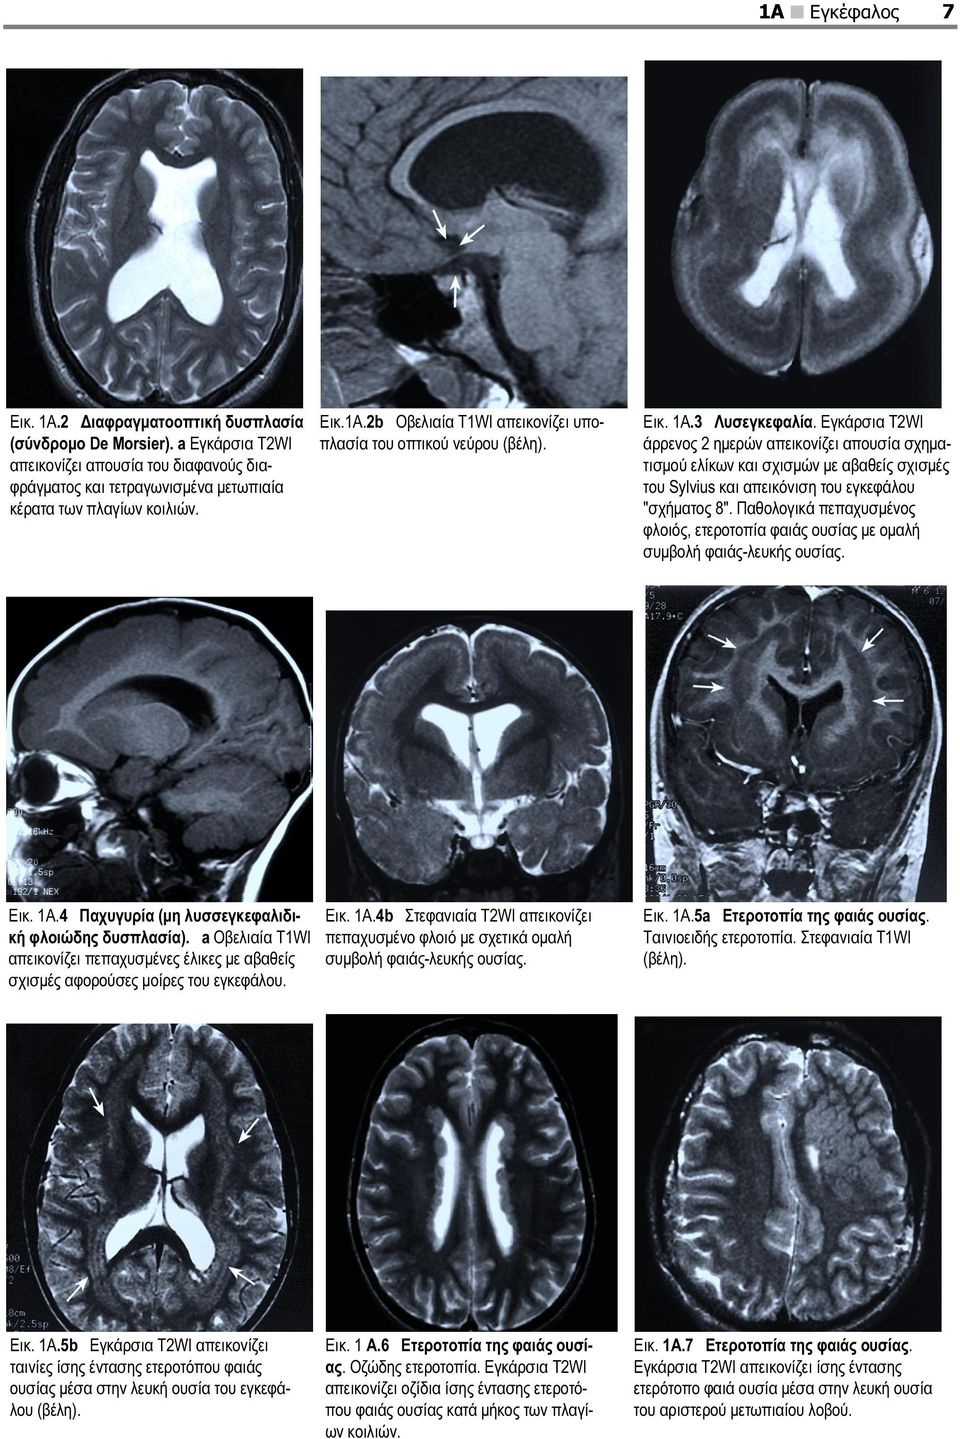 Εγκάρσια T2WI άρρενος 2 ημερών απεικονίζει απουσία σχηματισμού ελίκων και σχισμών με αβαθείς σχισμές του Sylvius και απεικόνιση του εγκεφάλου "σχήματος 8".